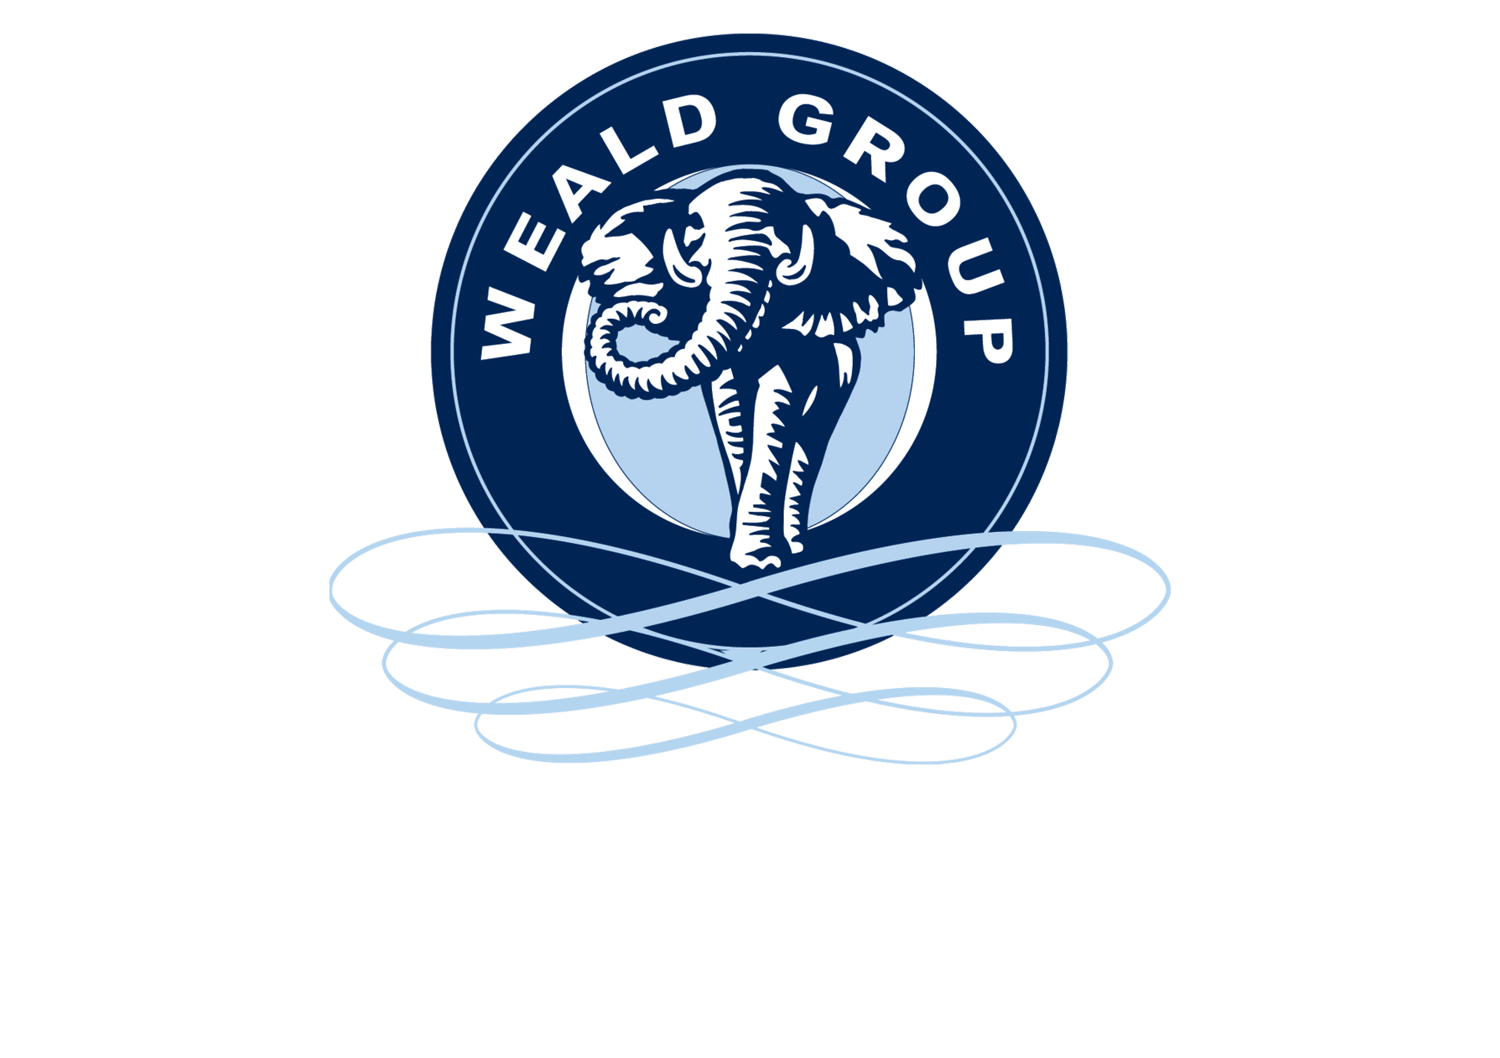 Weald Group Ltd